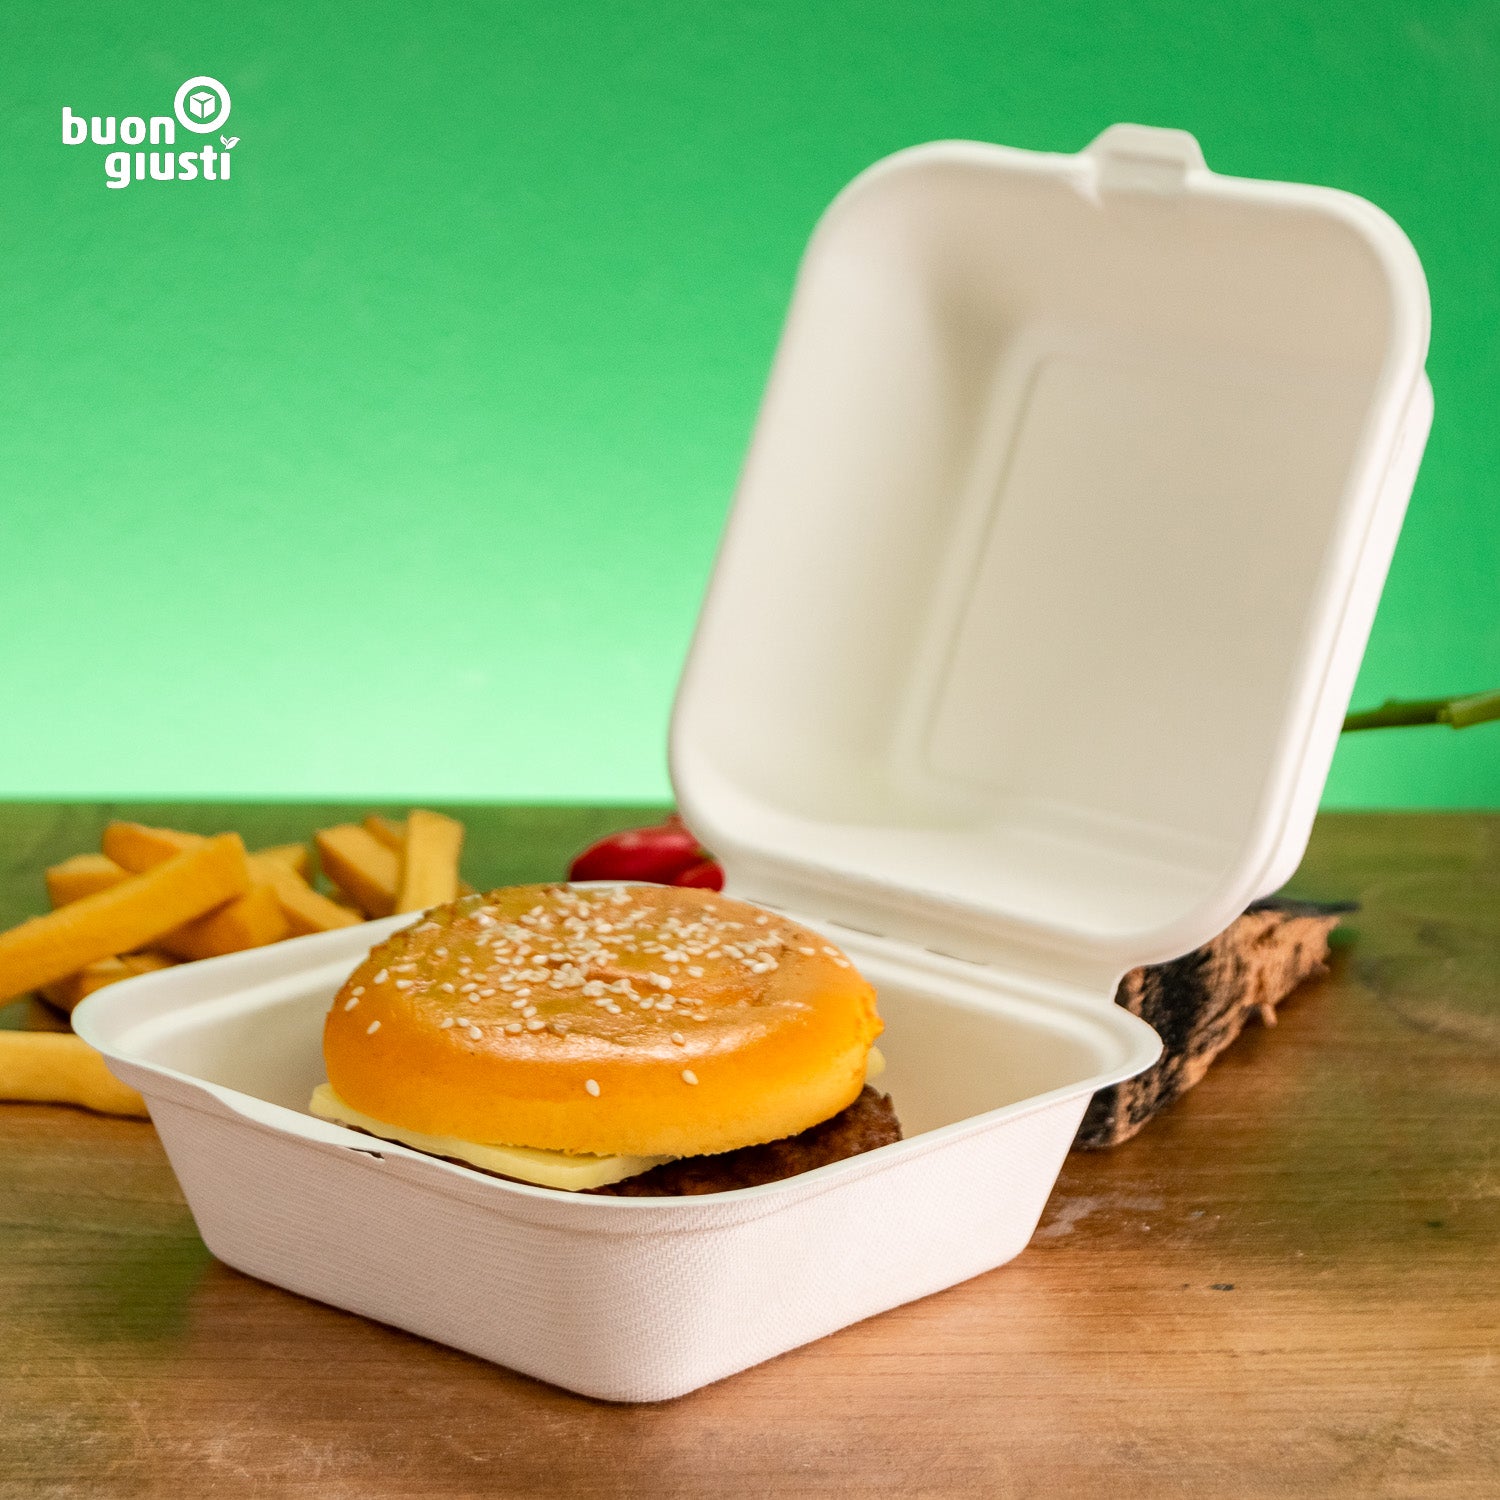 500x Zuckerohr Bio Burger-Box Personalisiert, für Take-away 14x15x8 cm | Gedruckt in ca. 3 Tagen! - Burger - buongiusti AG - personalisiert ab 100 Stück